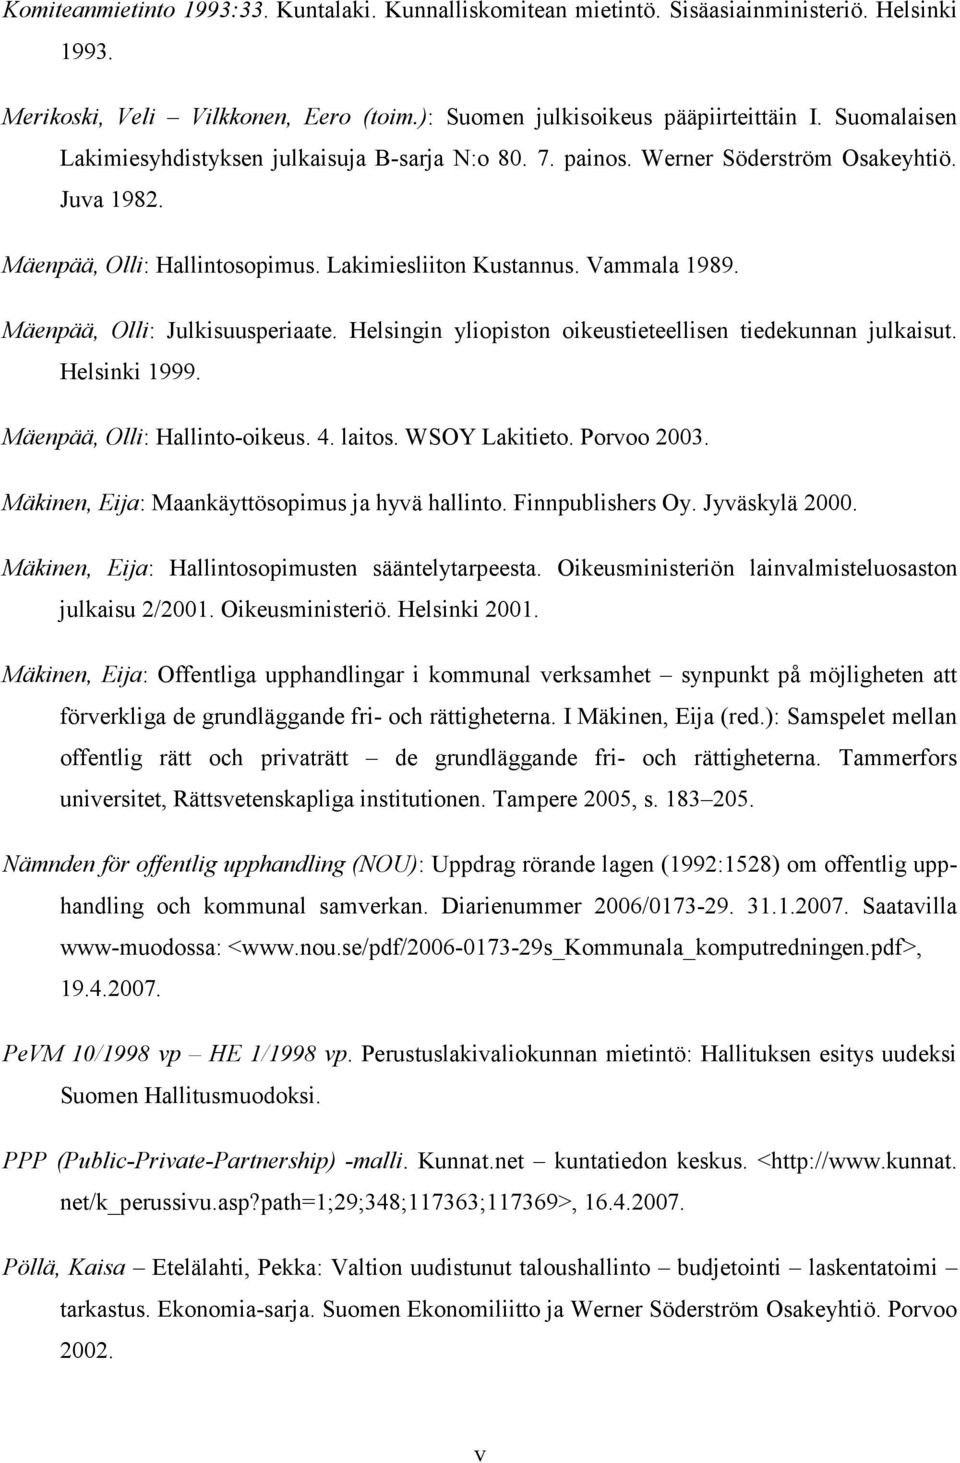 Mäenpää, Olli: Julkisuusperiaate. Helsingin yliopiston oikeustieteellisen tiedekunnan julkaisut. Helsinki 1999. Mäenpää, Olli: Hallinto-oikeus. 4. laitos. WSOY Lakitieto. Porvoo 2003.